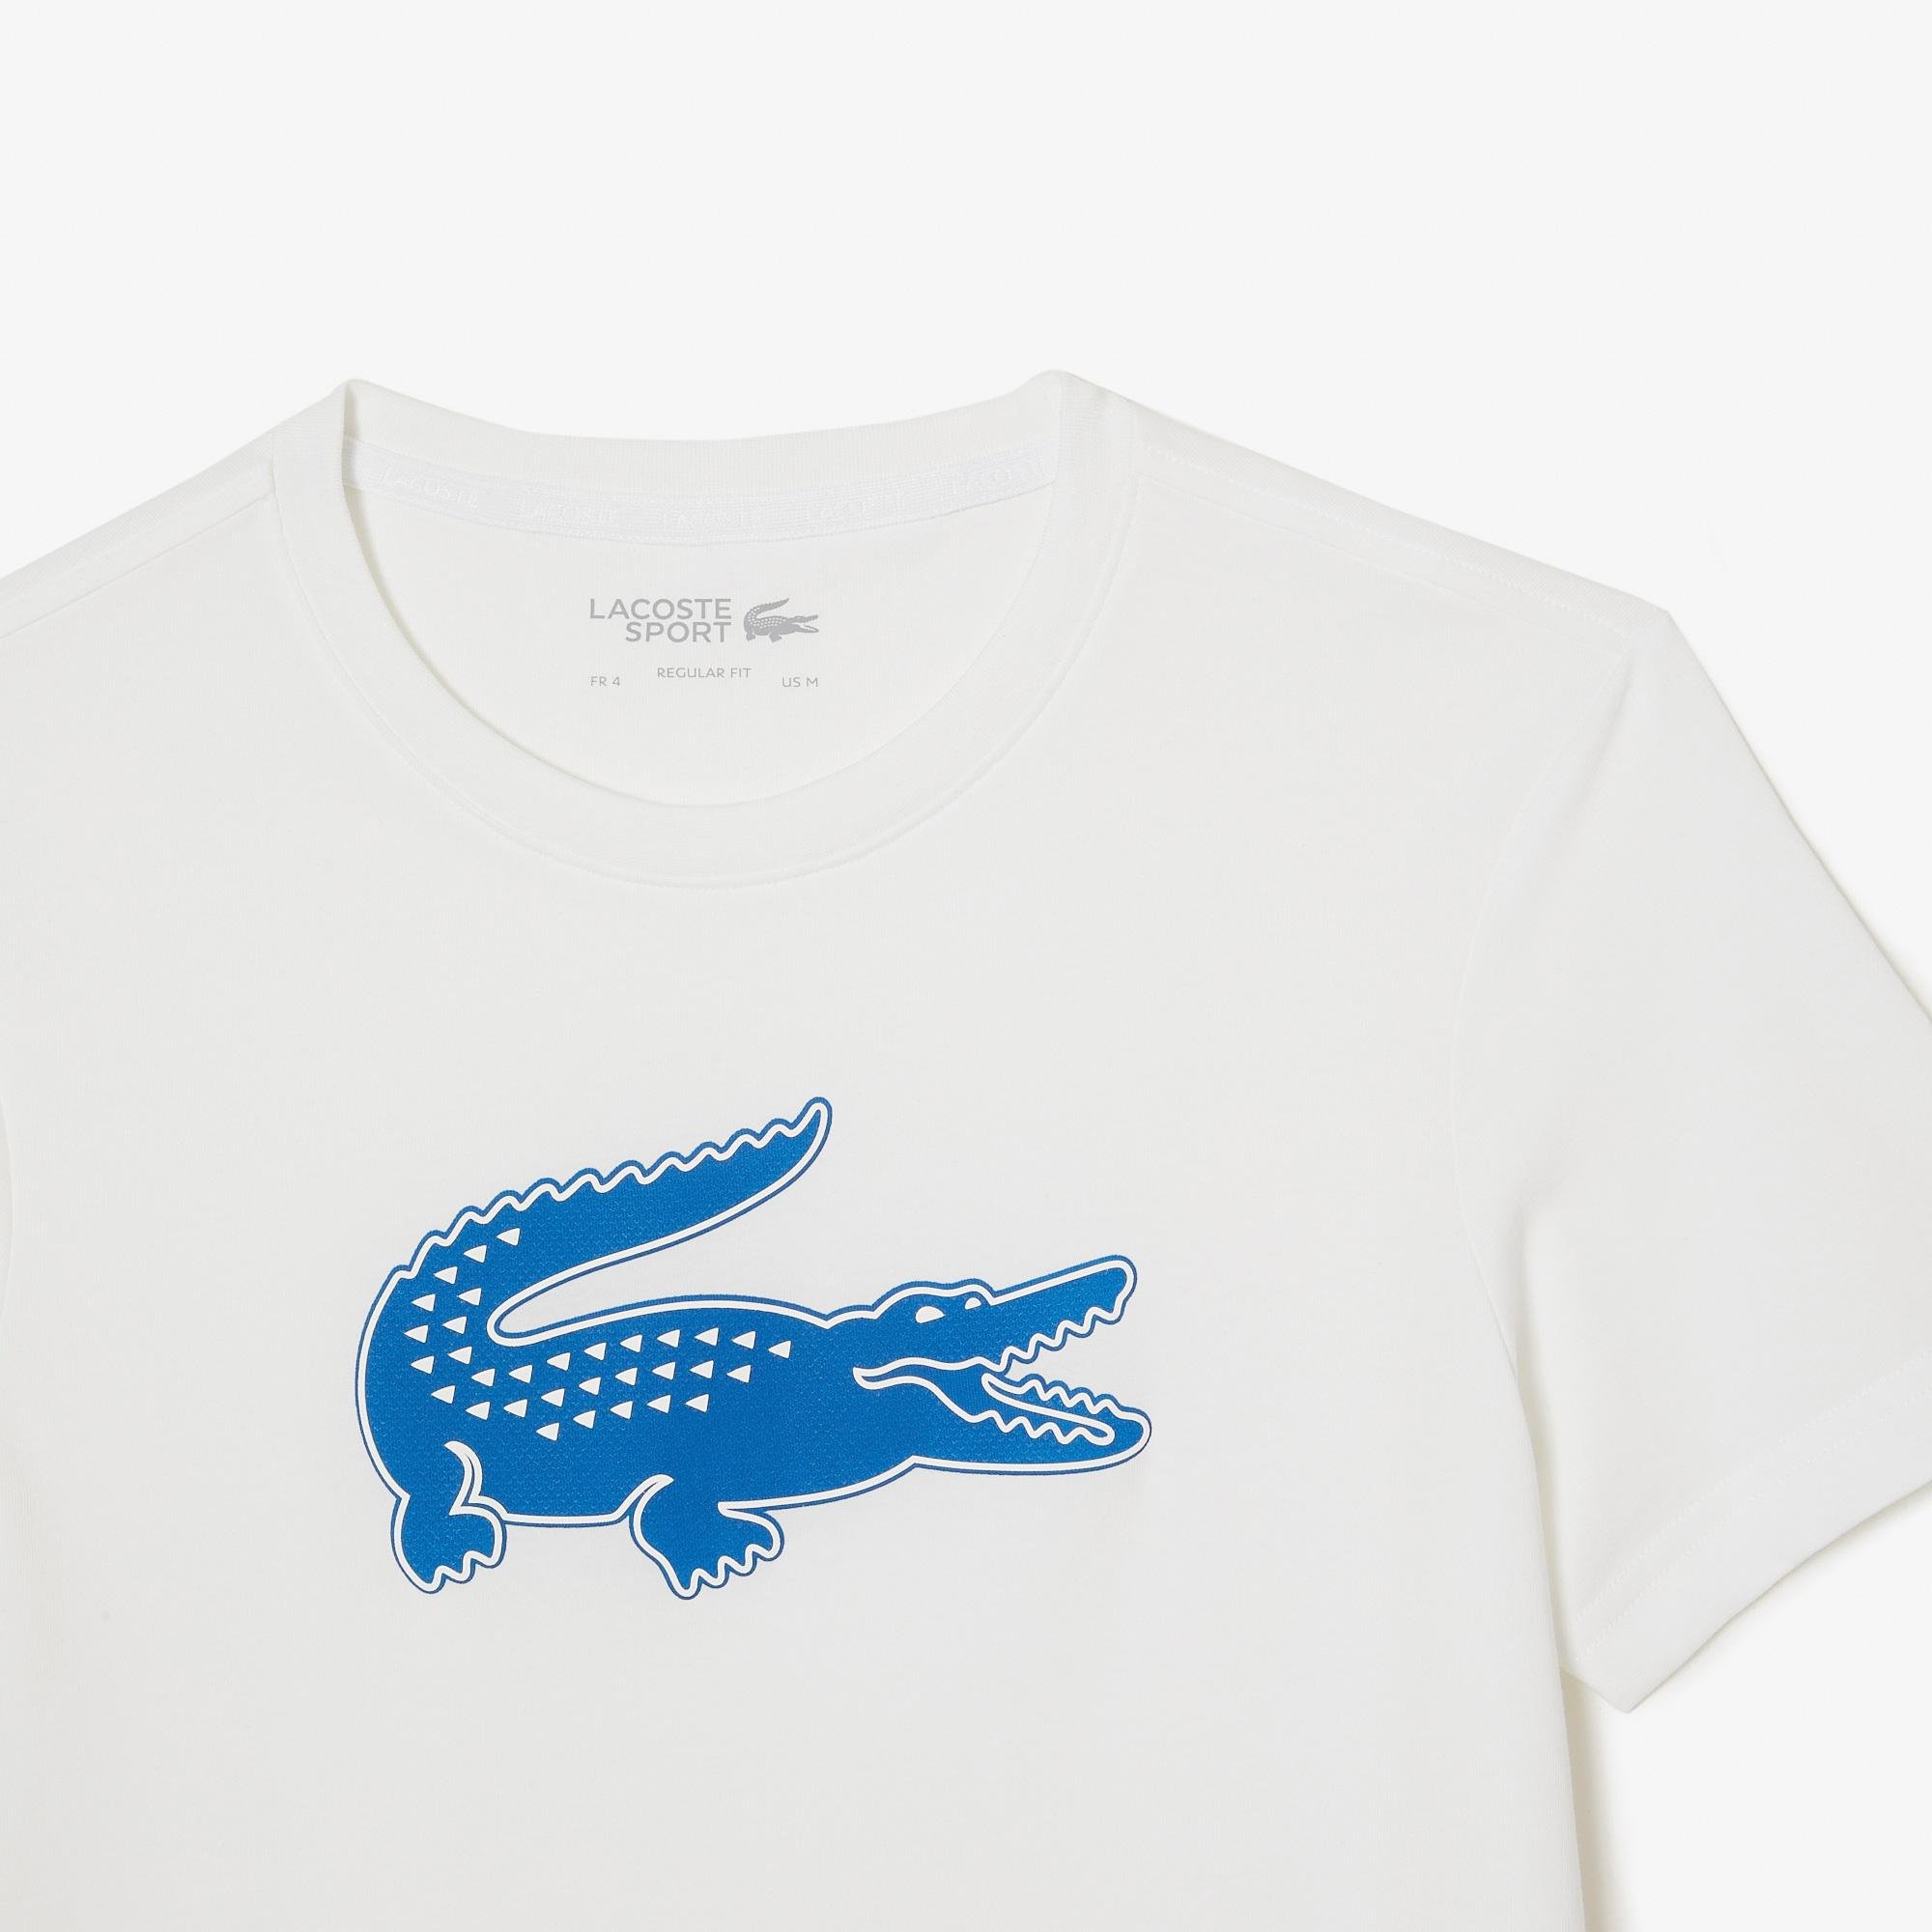 Lacoste pánské tričko SPORT s 3D potiskem krokodýla z prodyšného žerzeje